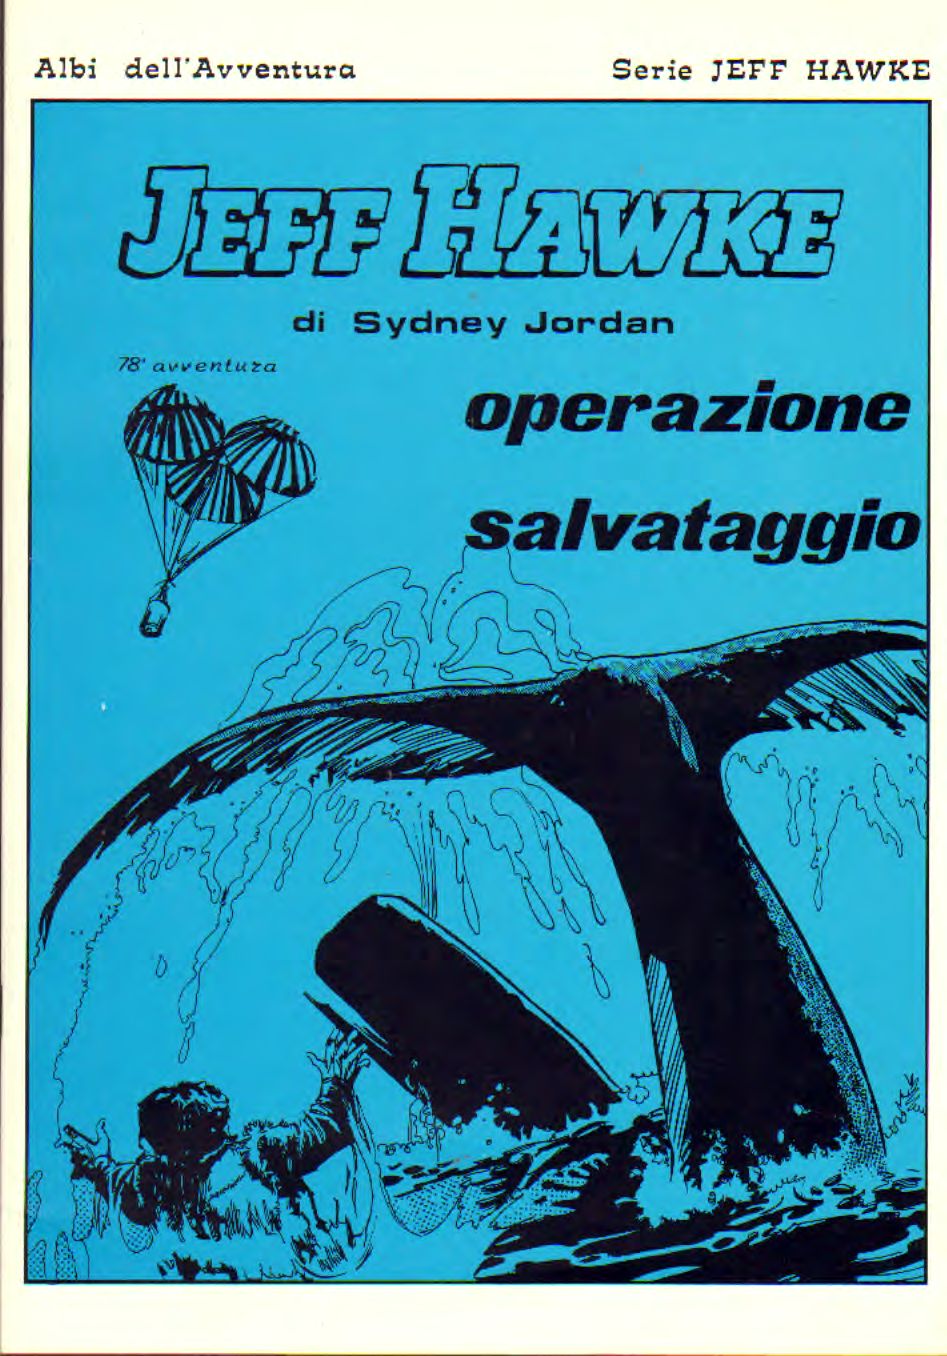 Jeff Hawke - 78 avventura